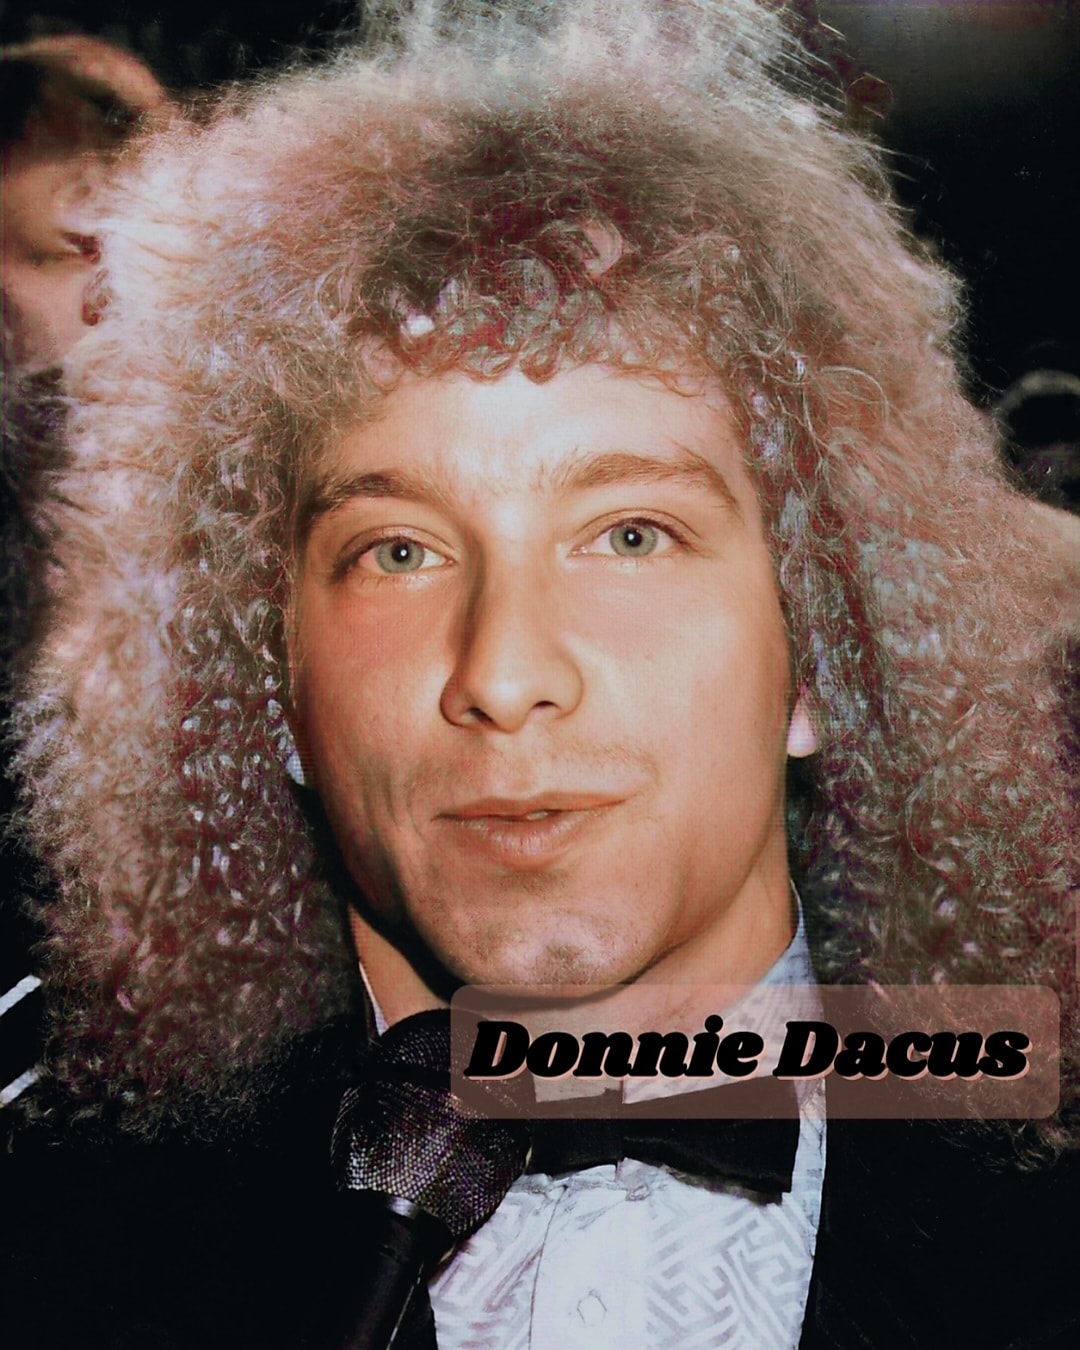 Donnie Dacus at Hair-Premiere 1979